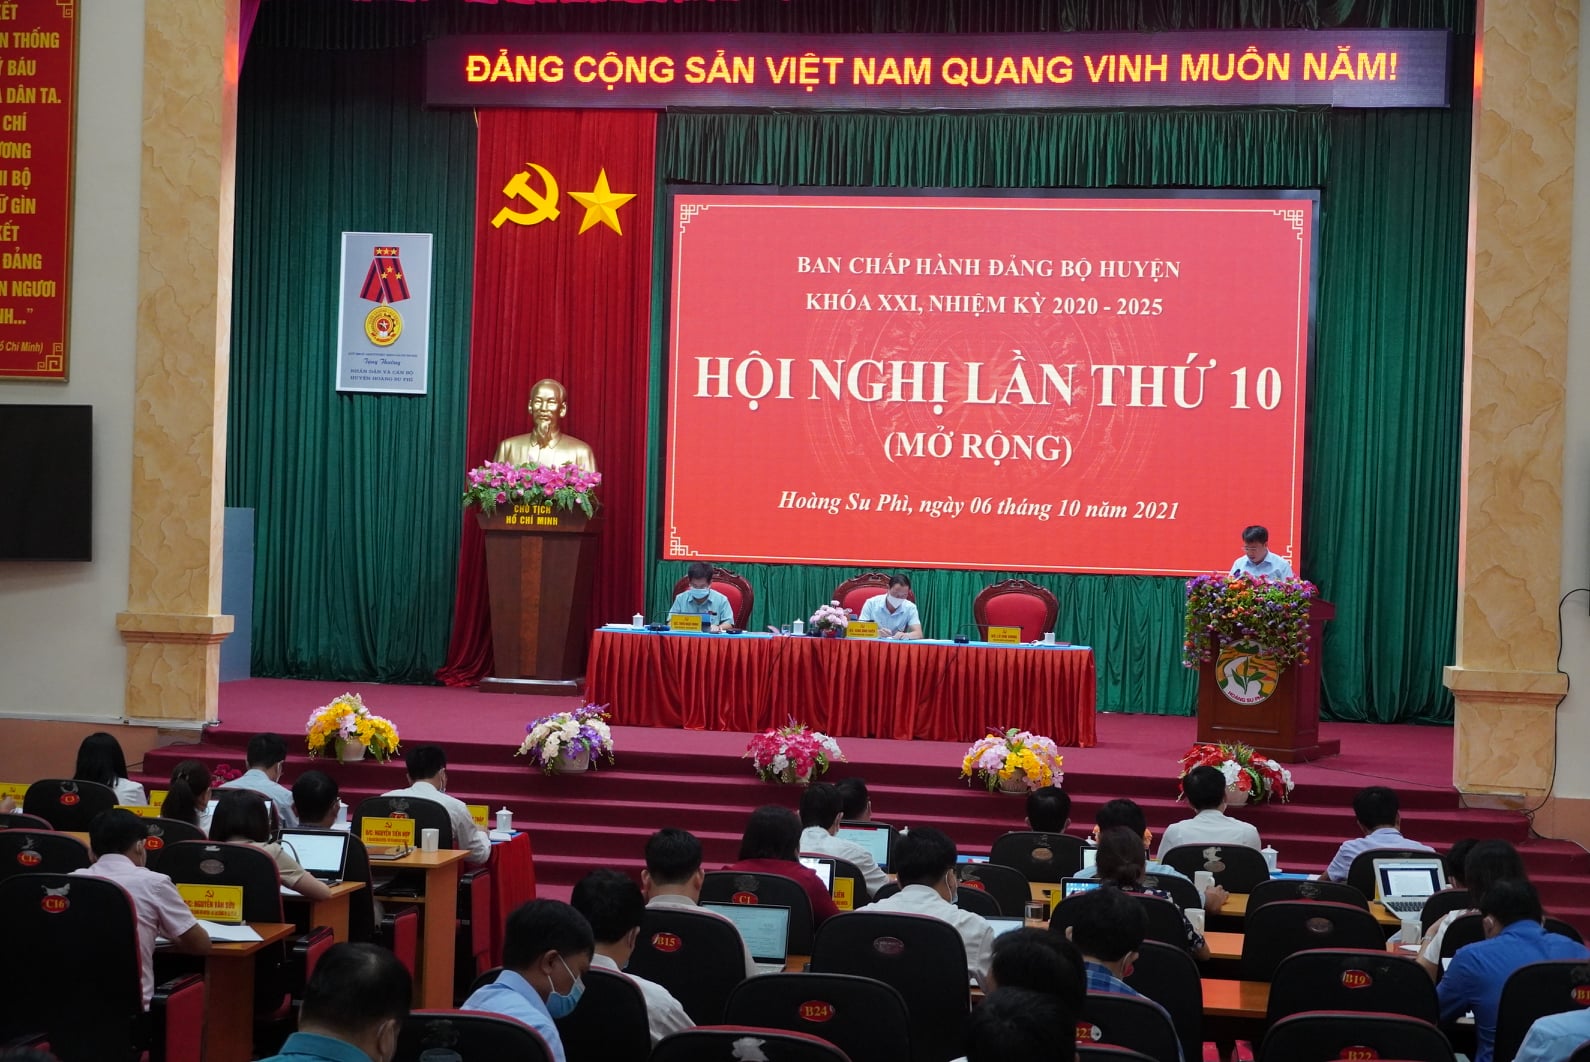 Hội nghị Ban Chấp hành Đảng bộ huyện Hoàng Su Phì lần thứ 10 mở rộng